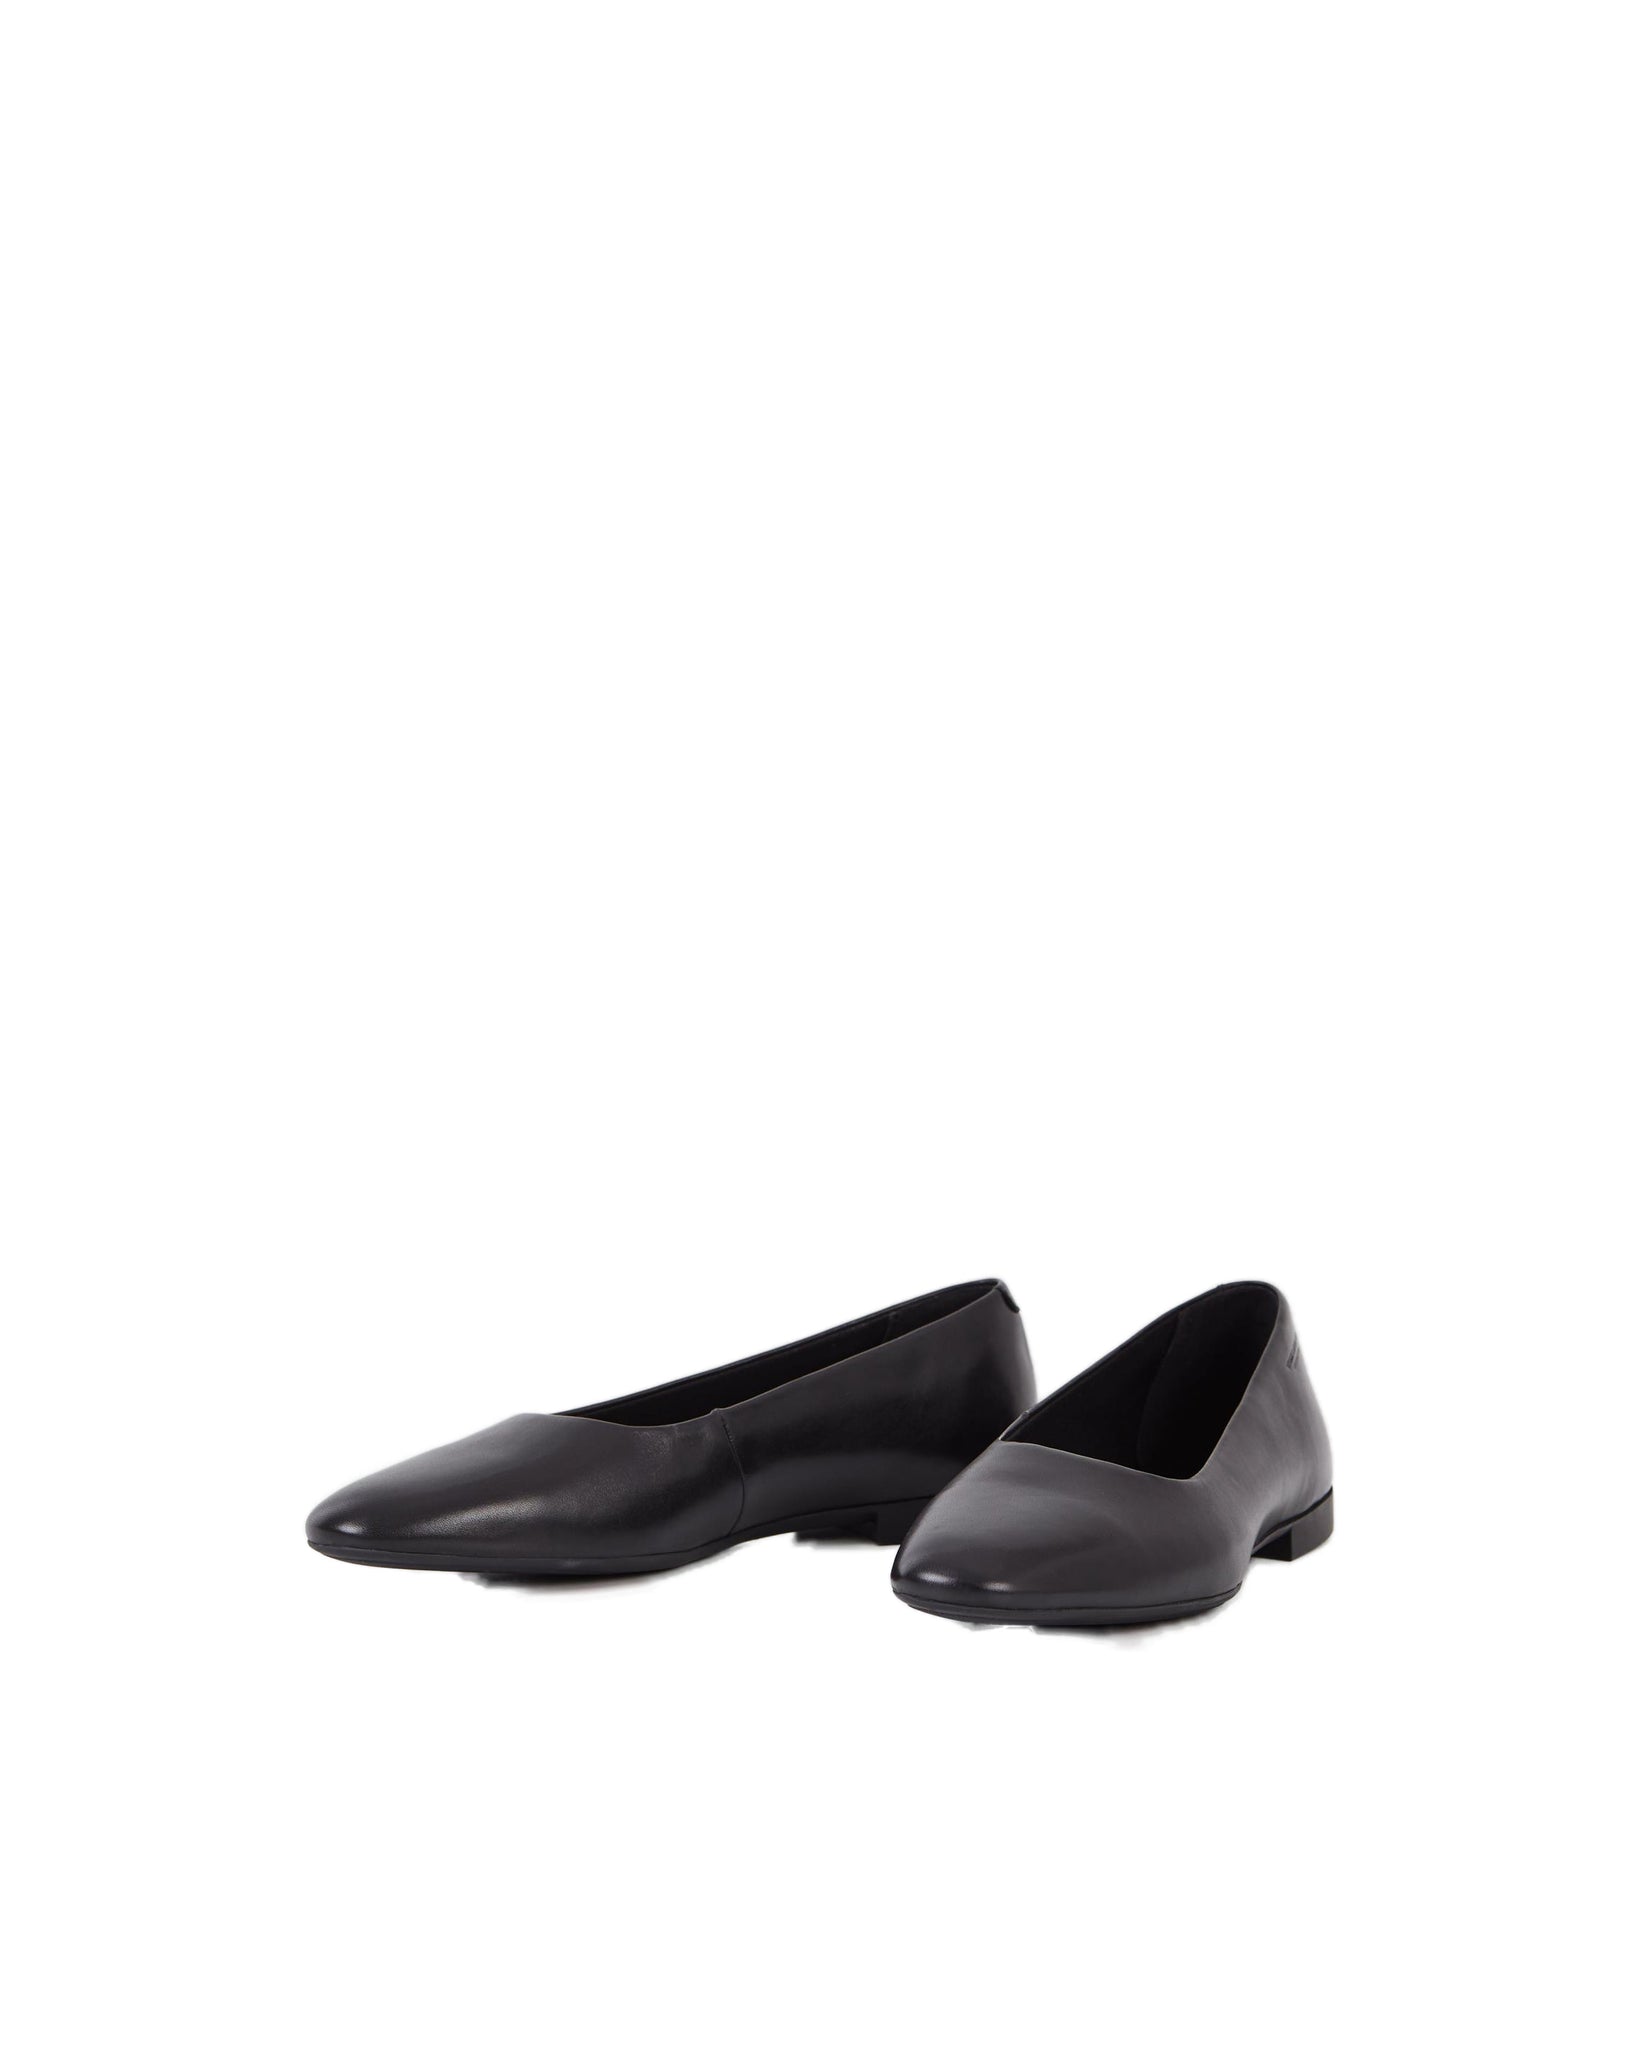 Sibel (5758-201-20) Shoes - Negro